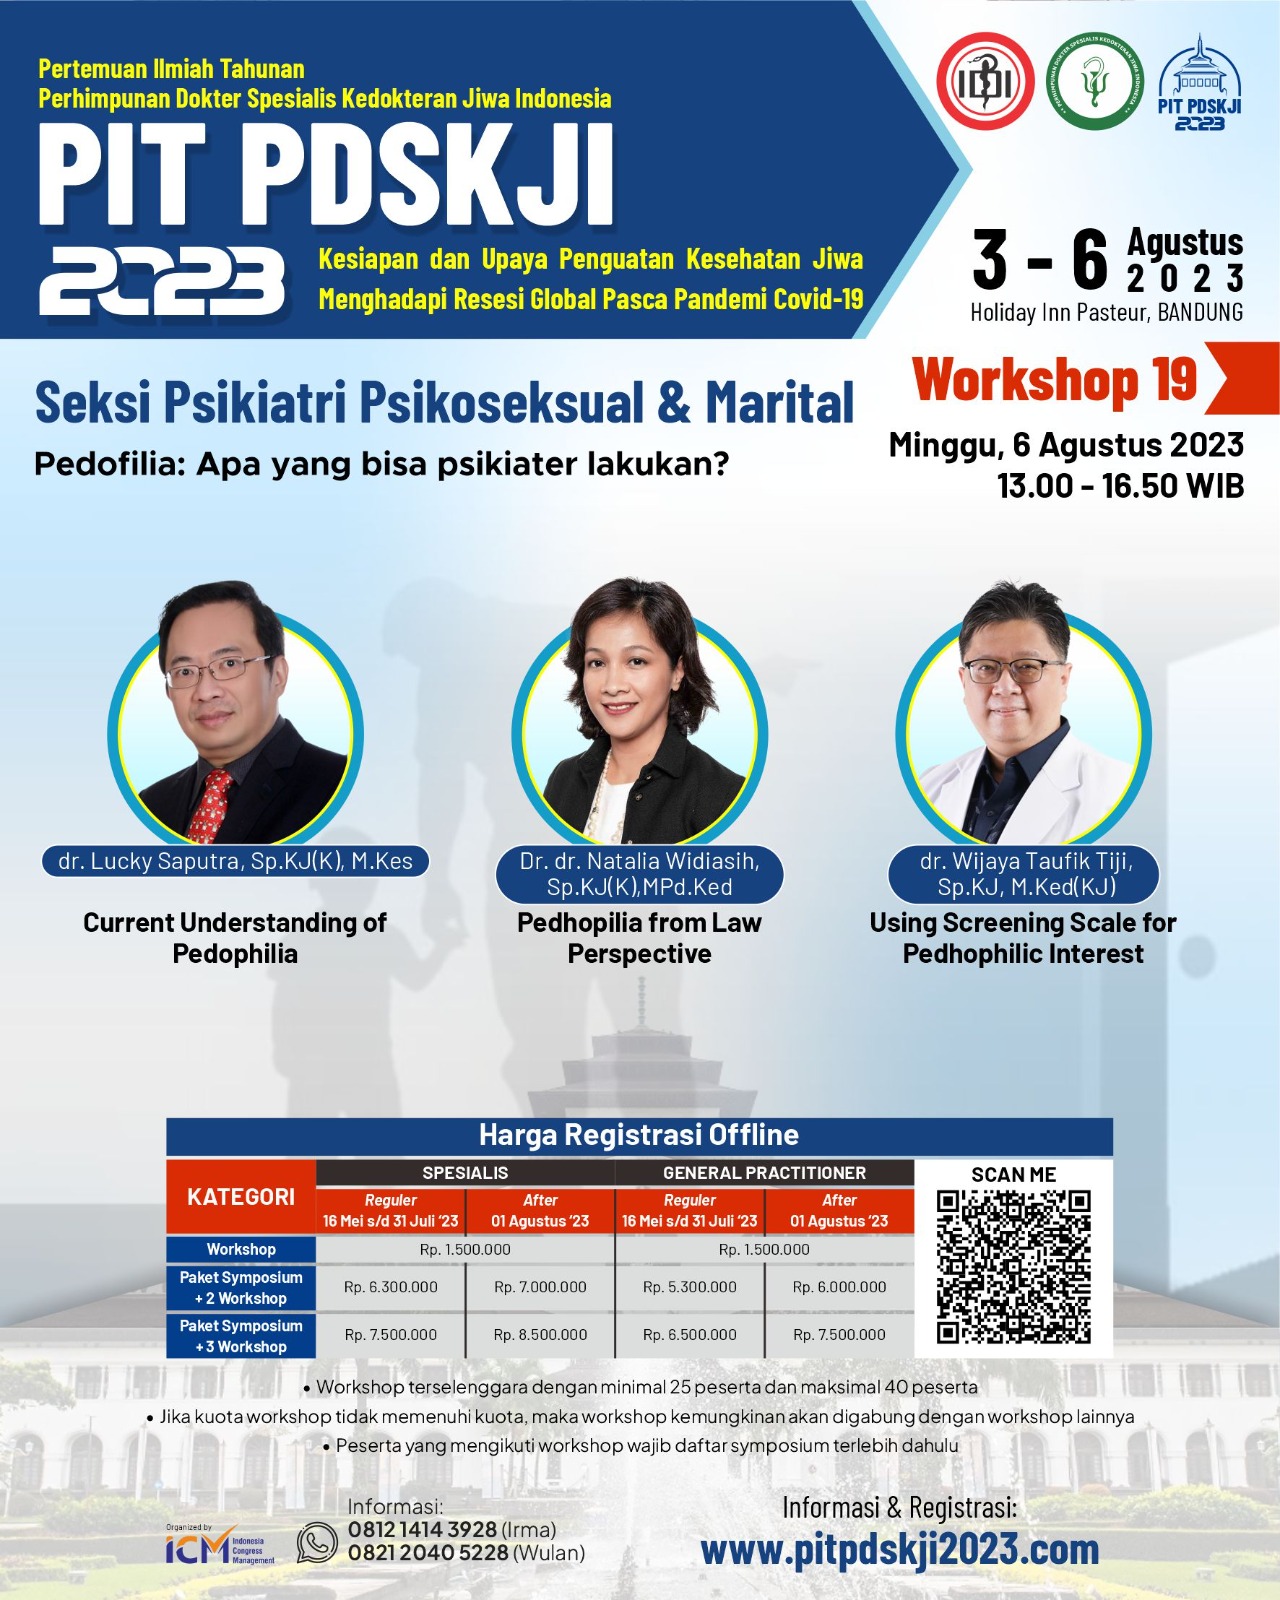 PIT PDSKJI Workshop 19 : Seksi Psikiatri Psikoseksual & Marital